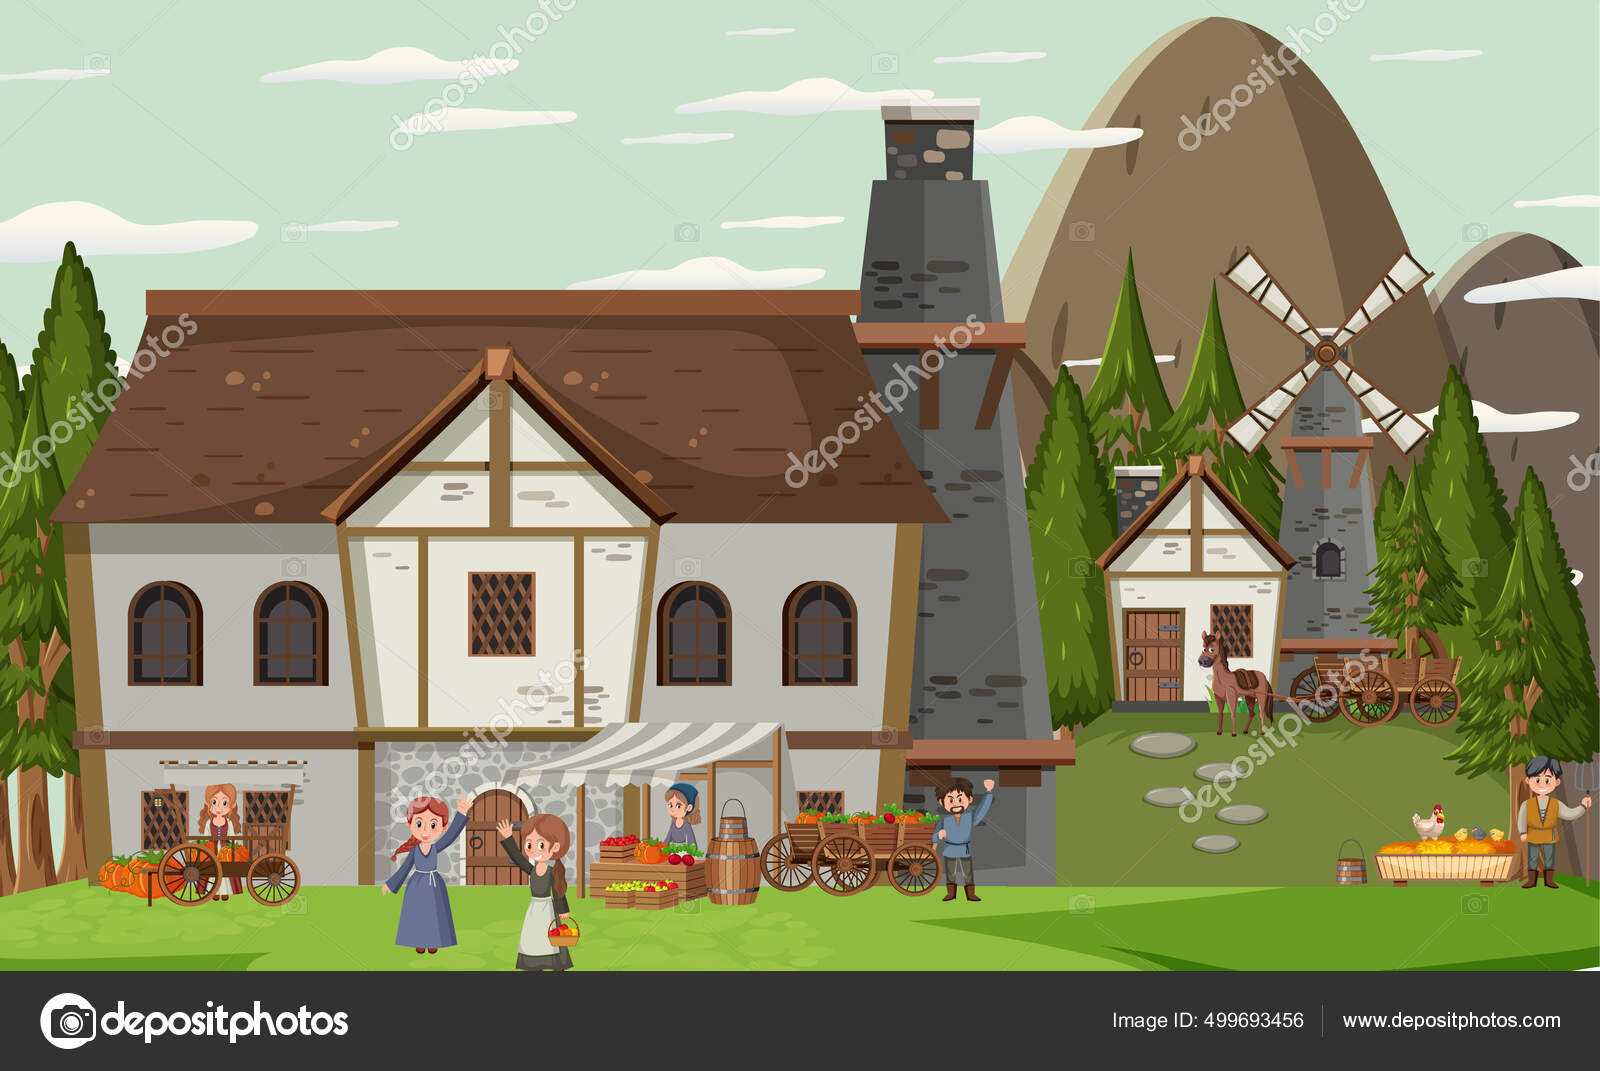 Casa Medieval Com Ilustração De Moinho De Vento E Aldeões Royalty